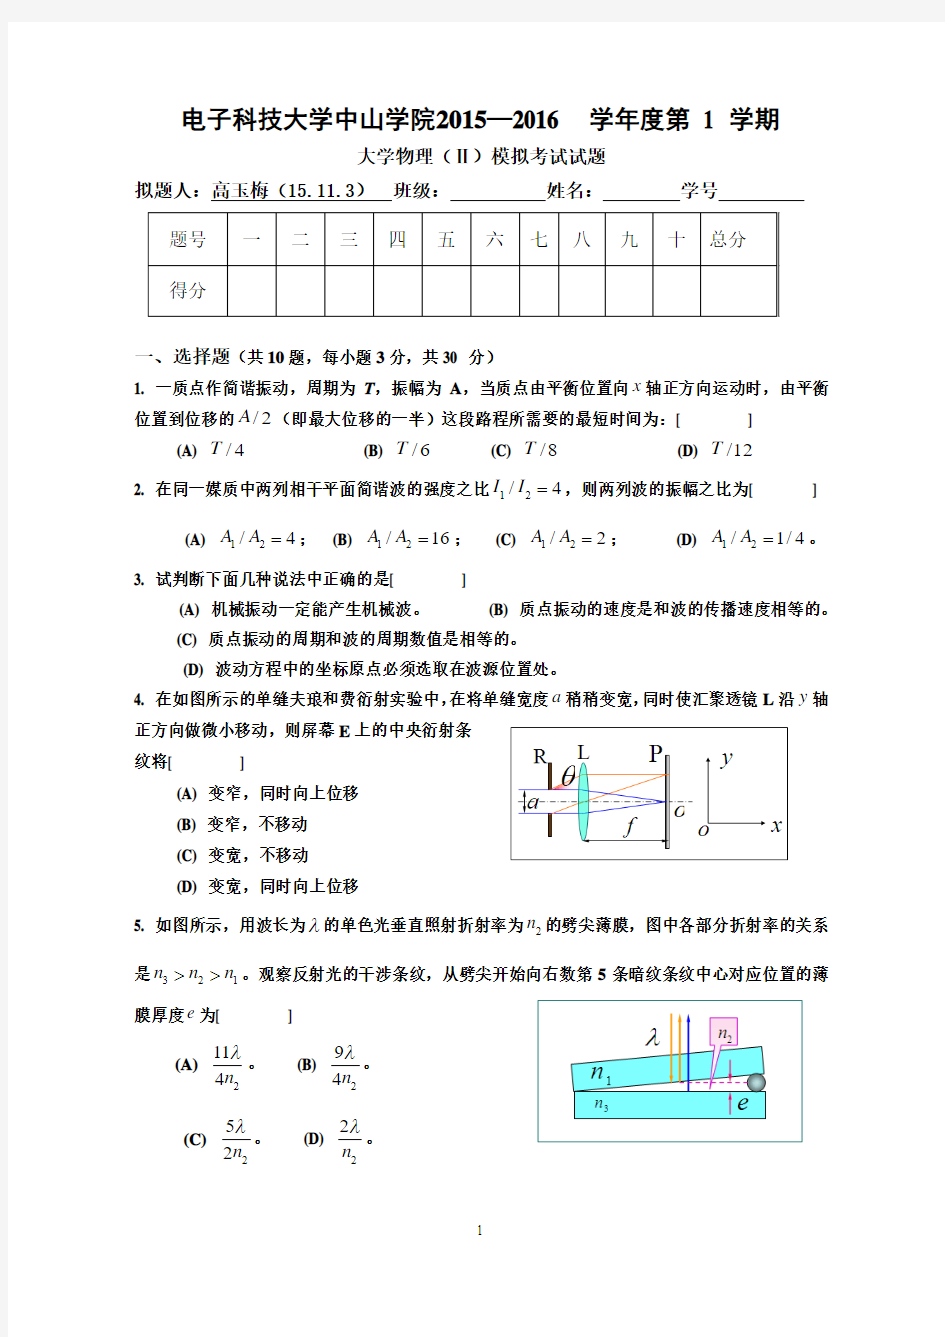 大学物理II模拟考试试题-gao-15.12.3